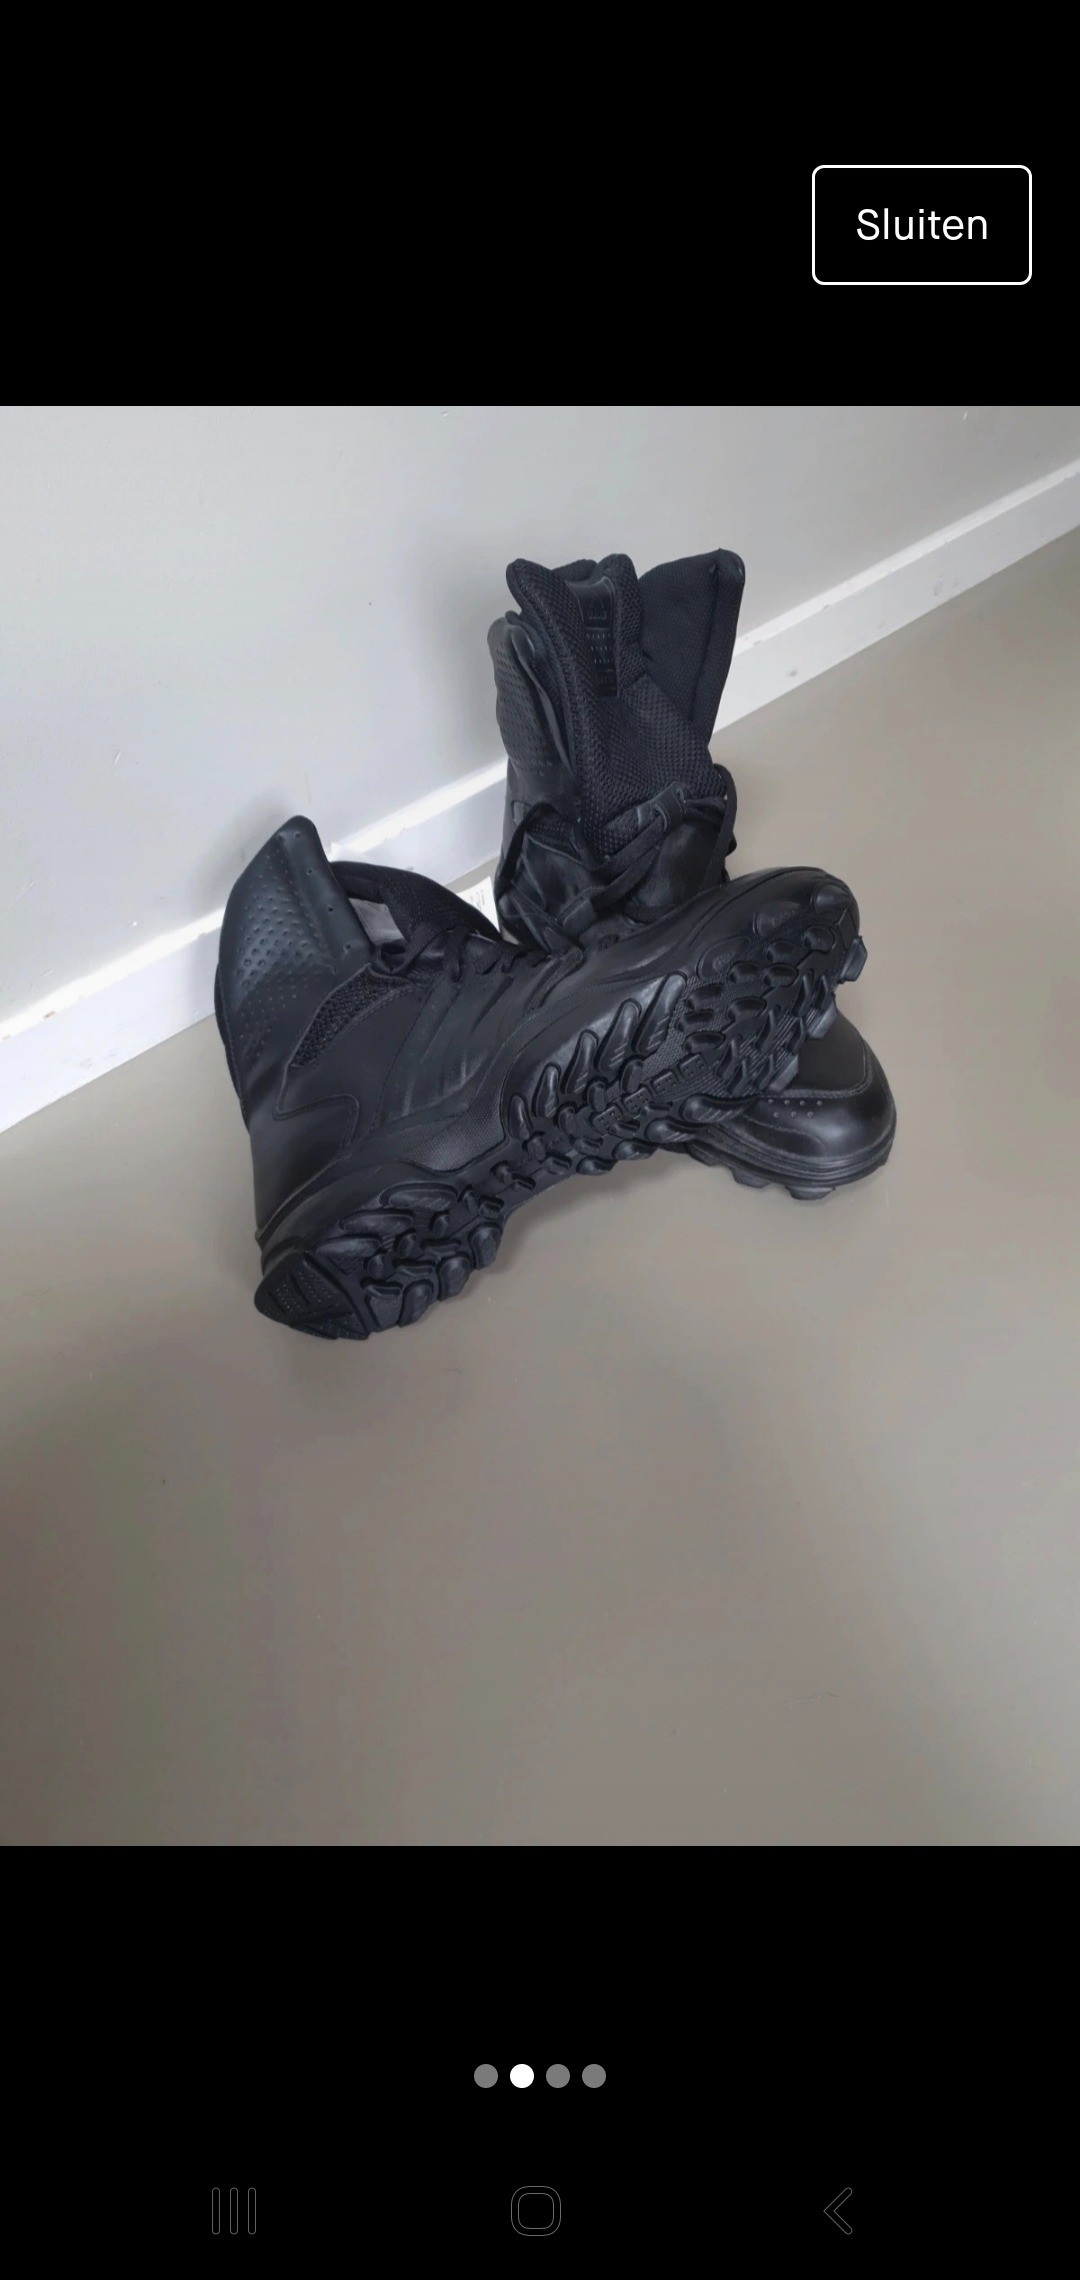 salto Oeps Minister Adidas gsg 9.2 schoenen 45 kisten politie dsi defensie - Airsoft Bazaar